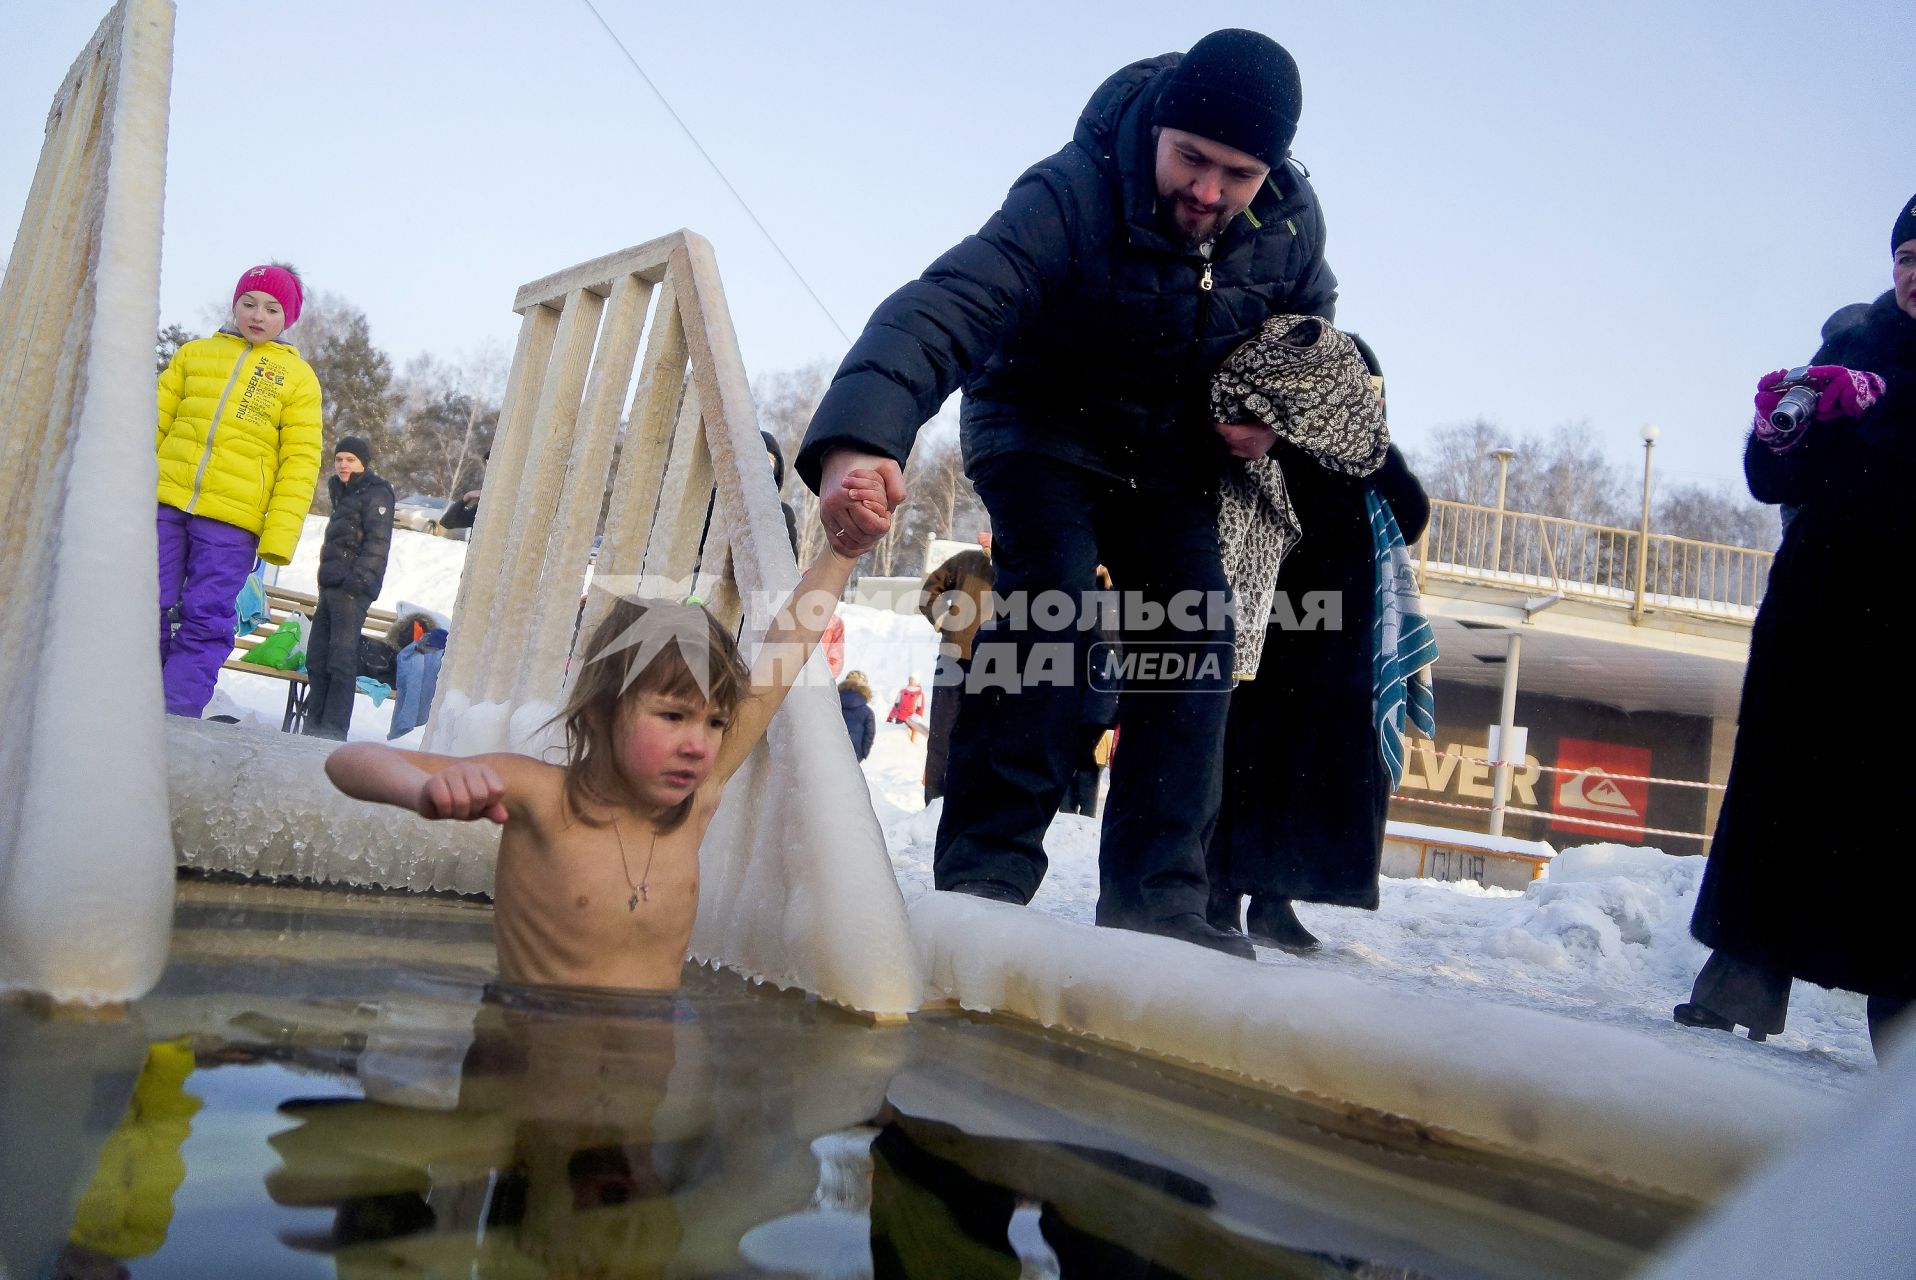 Крещенские купания в Екатеринбурге. На снимке: ребенок в проруби.